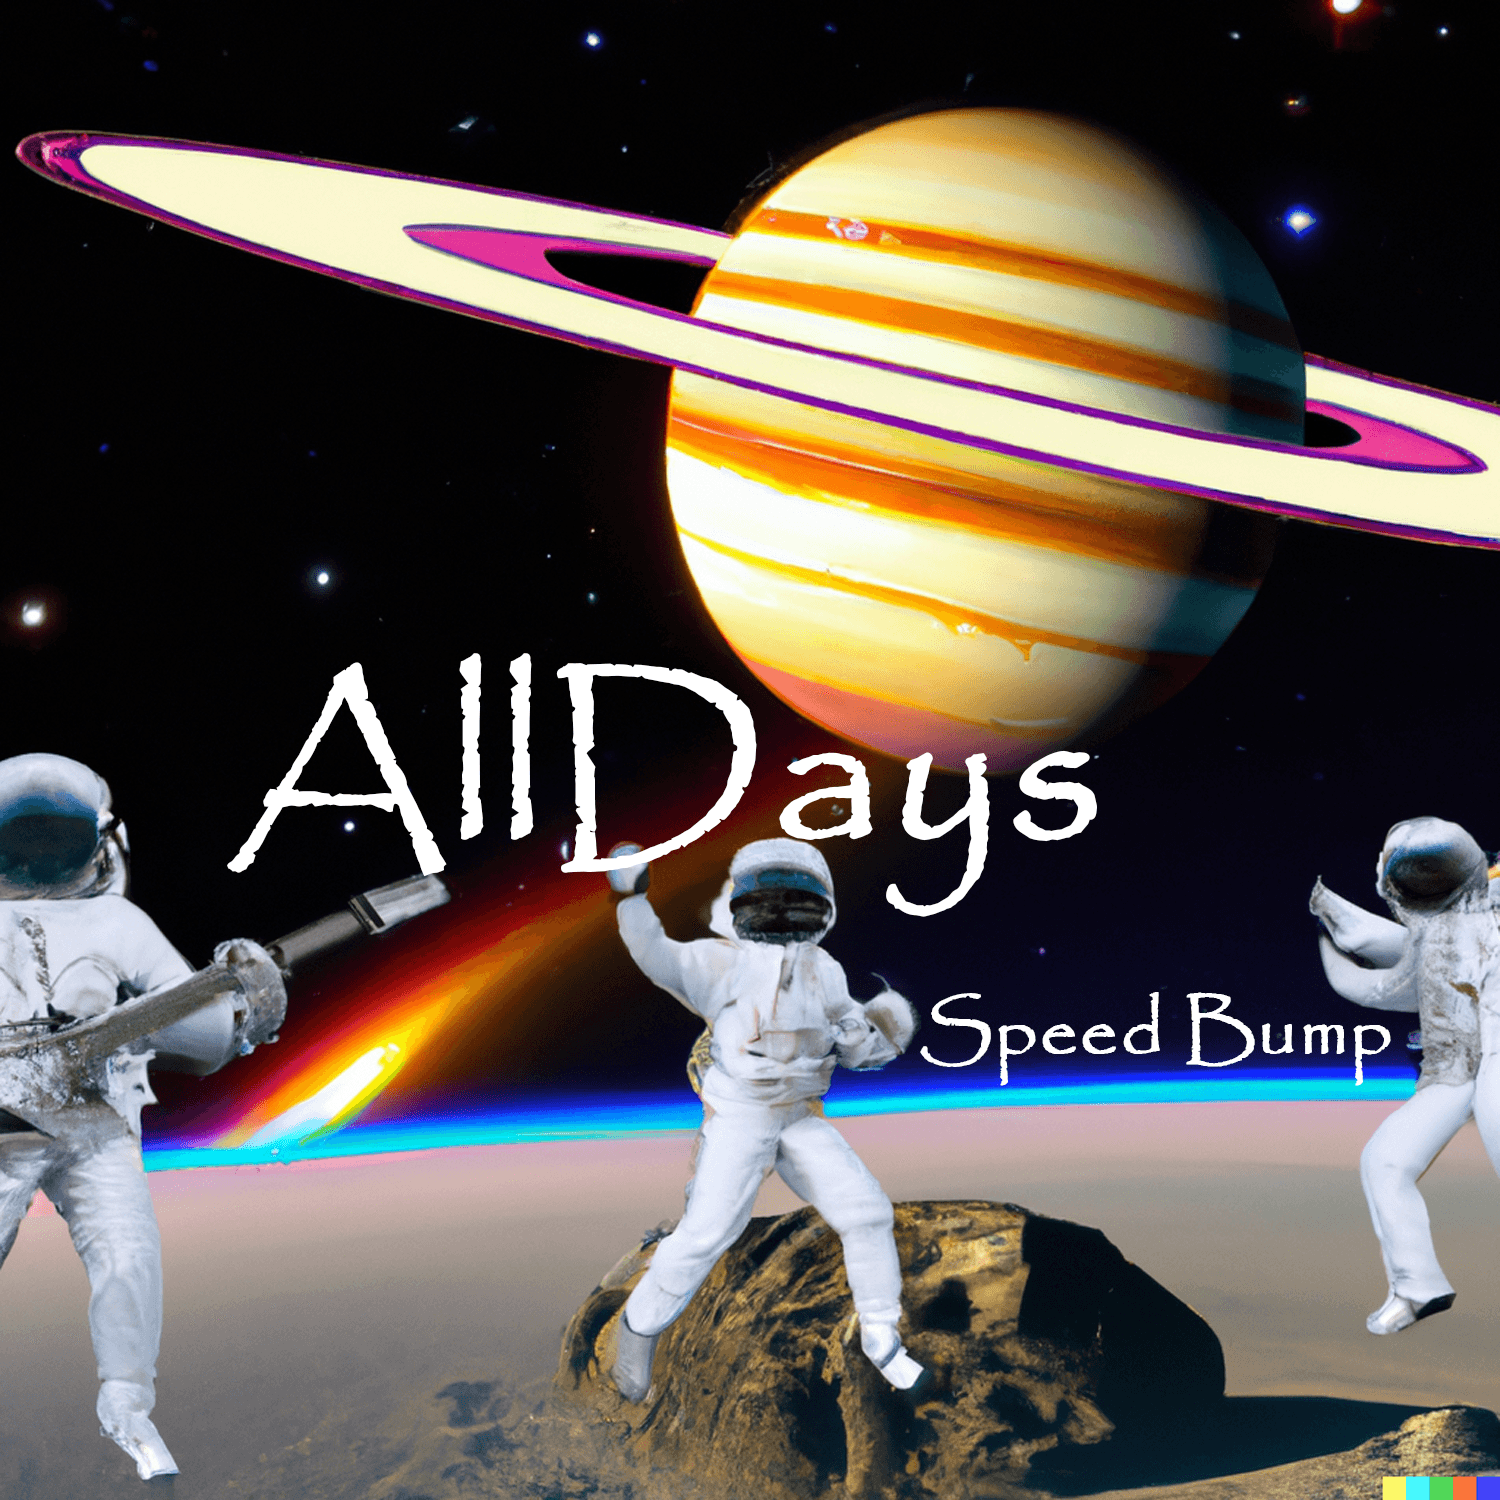 AllDays "Speed Bump" Full Song NFT 2/12